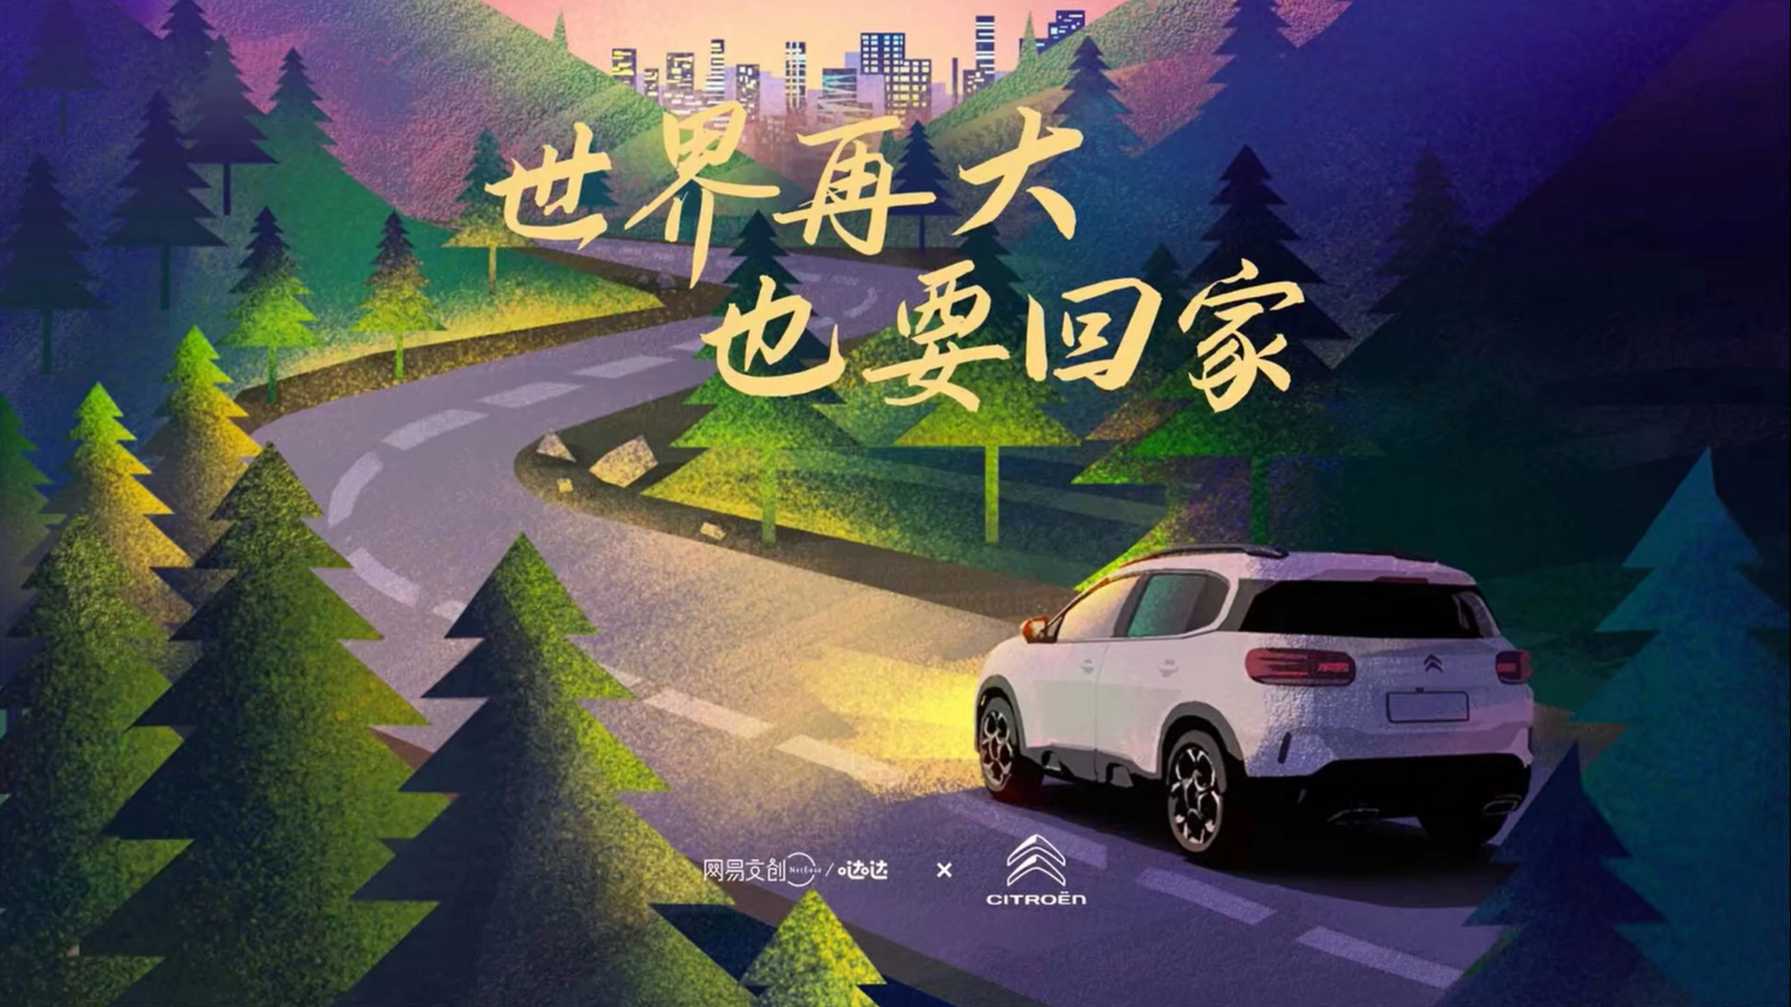 网易哒哒x东风雪铁龙 新年广告《回家》